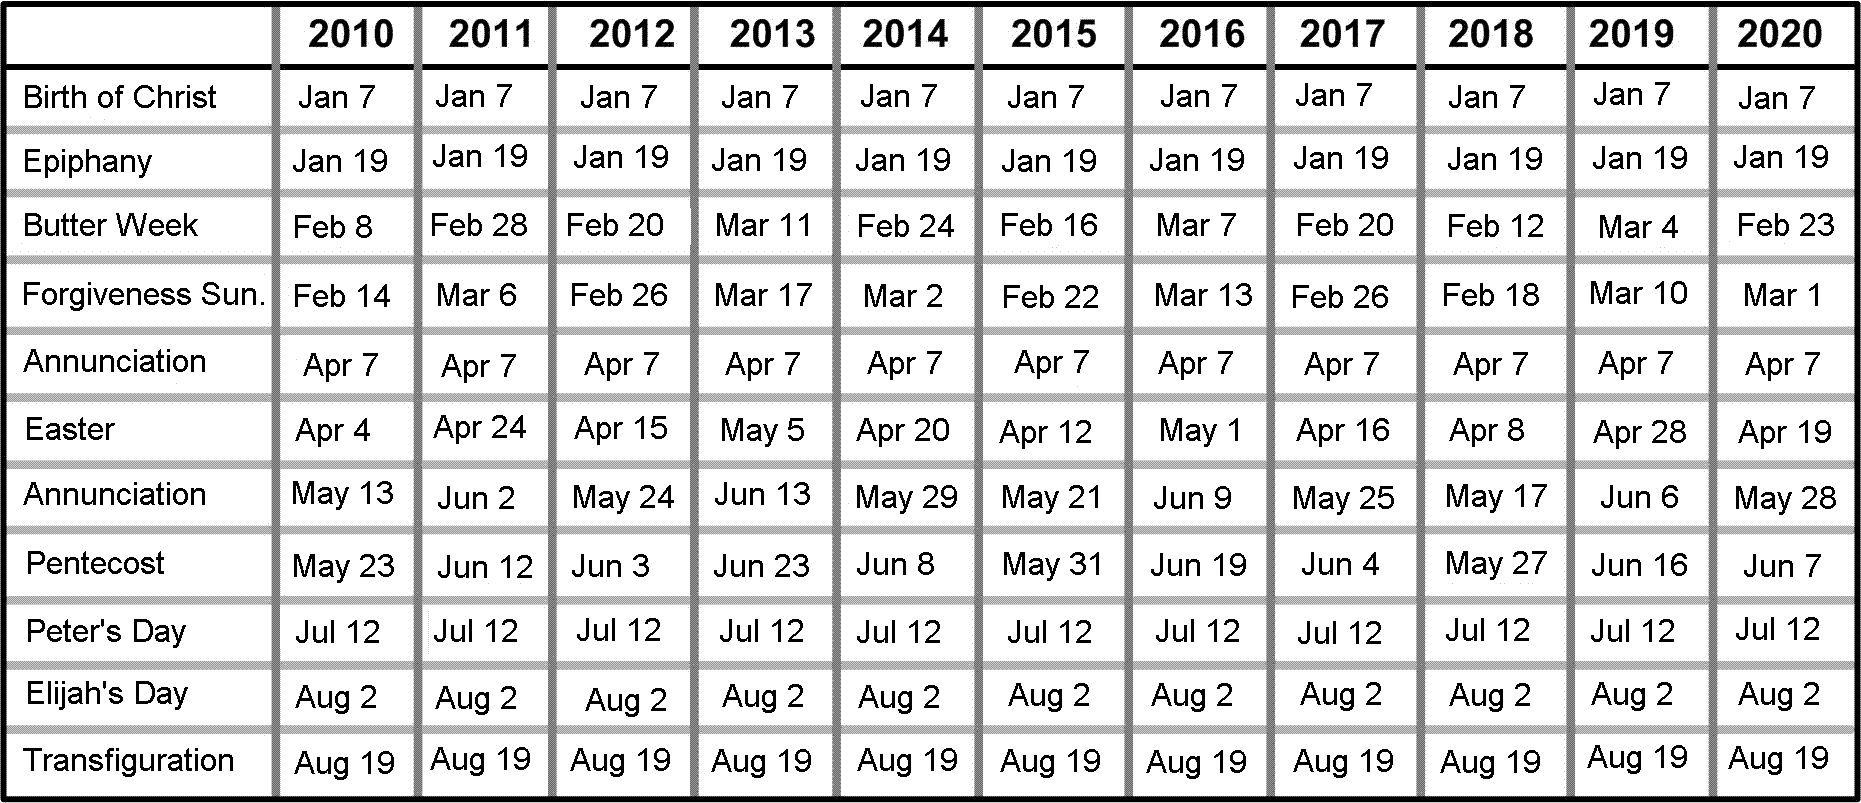 Пасха в 1992 году. Числа Пасхи по годам. Даты Пасхи таблица. Календарь Пасхи на несколько лет. Даты Пасхи по годам с 2000 года.